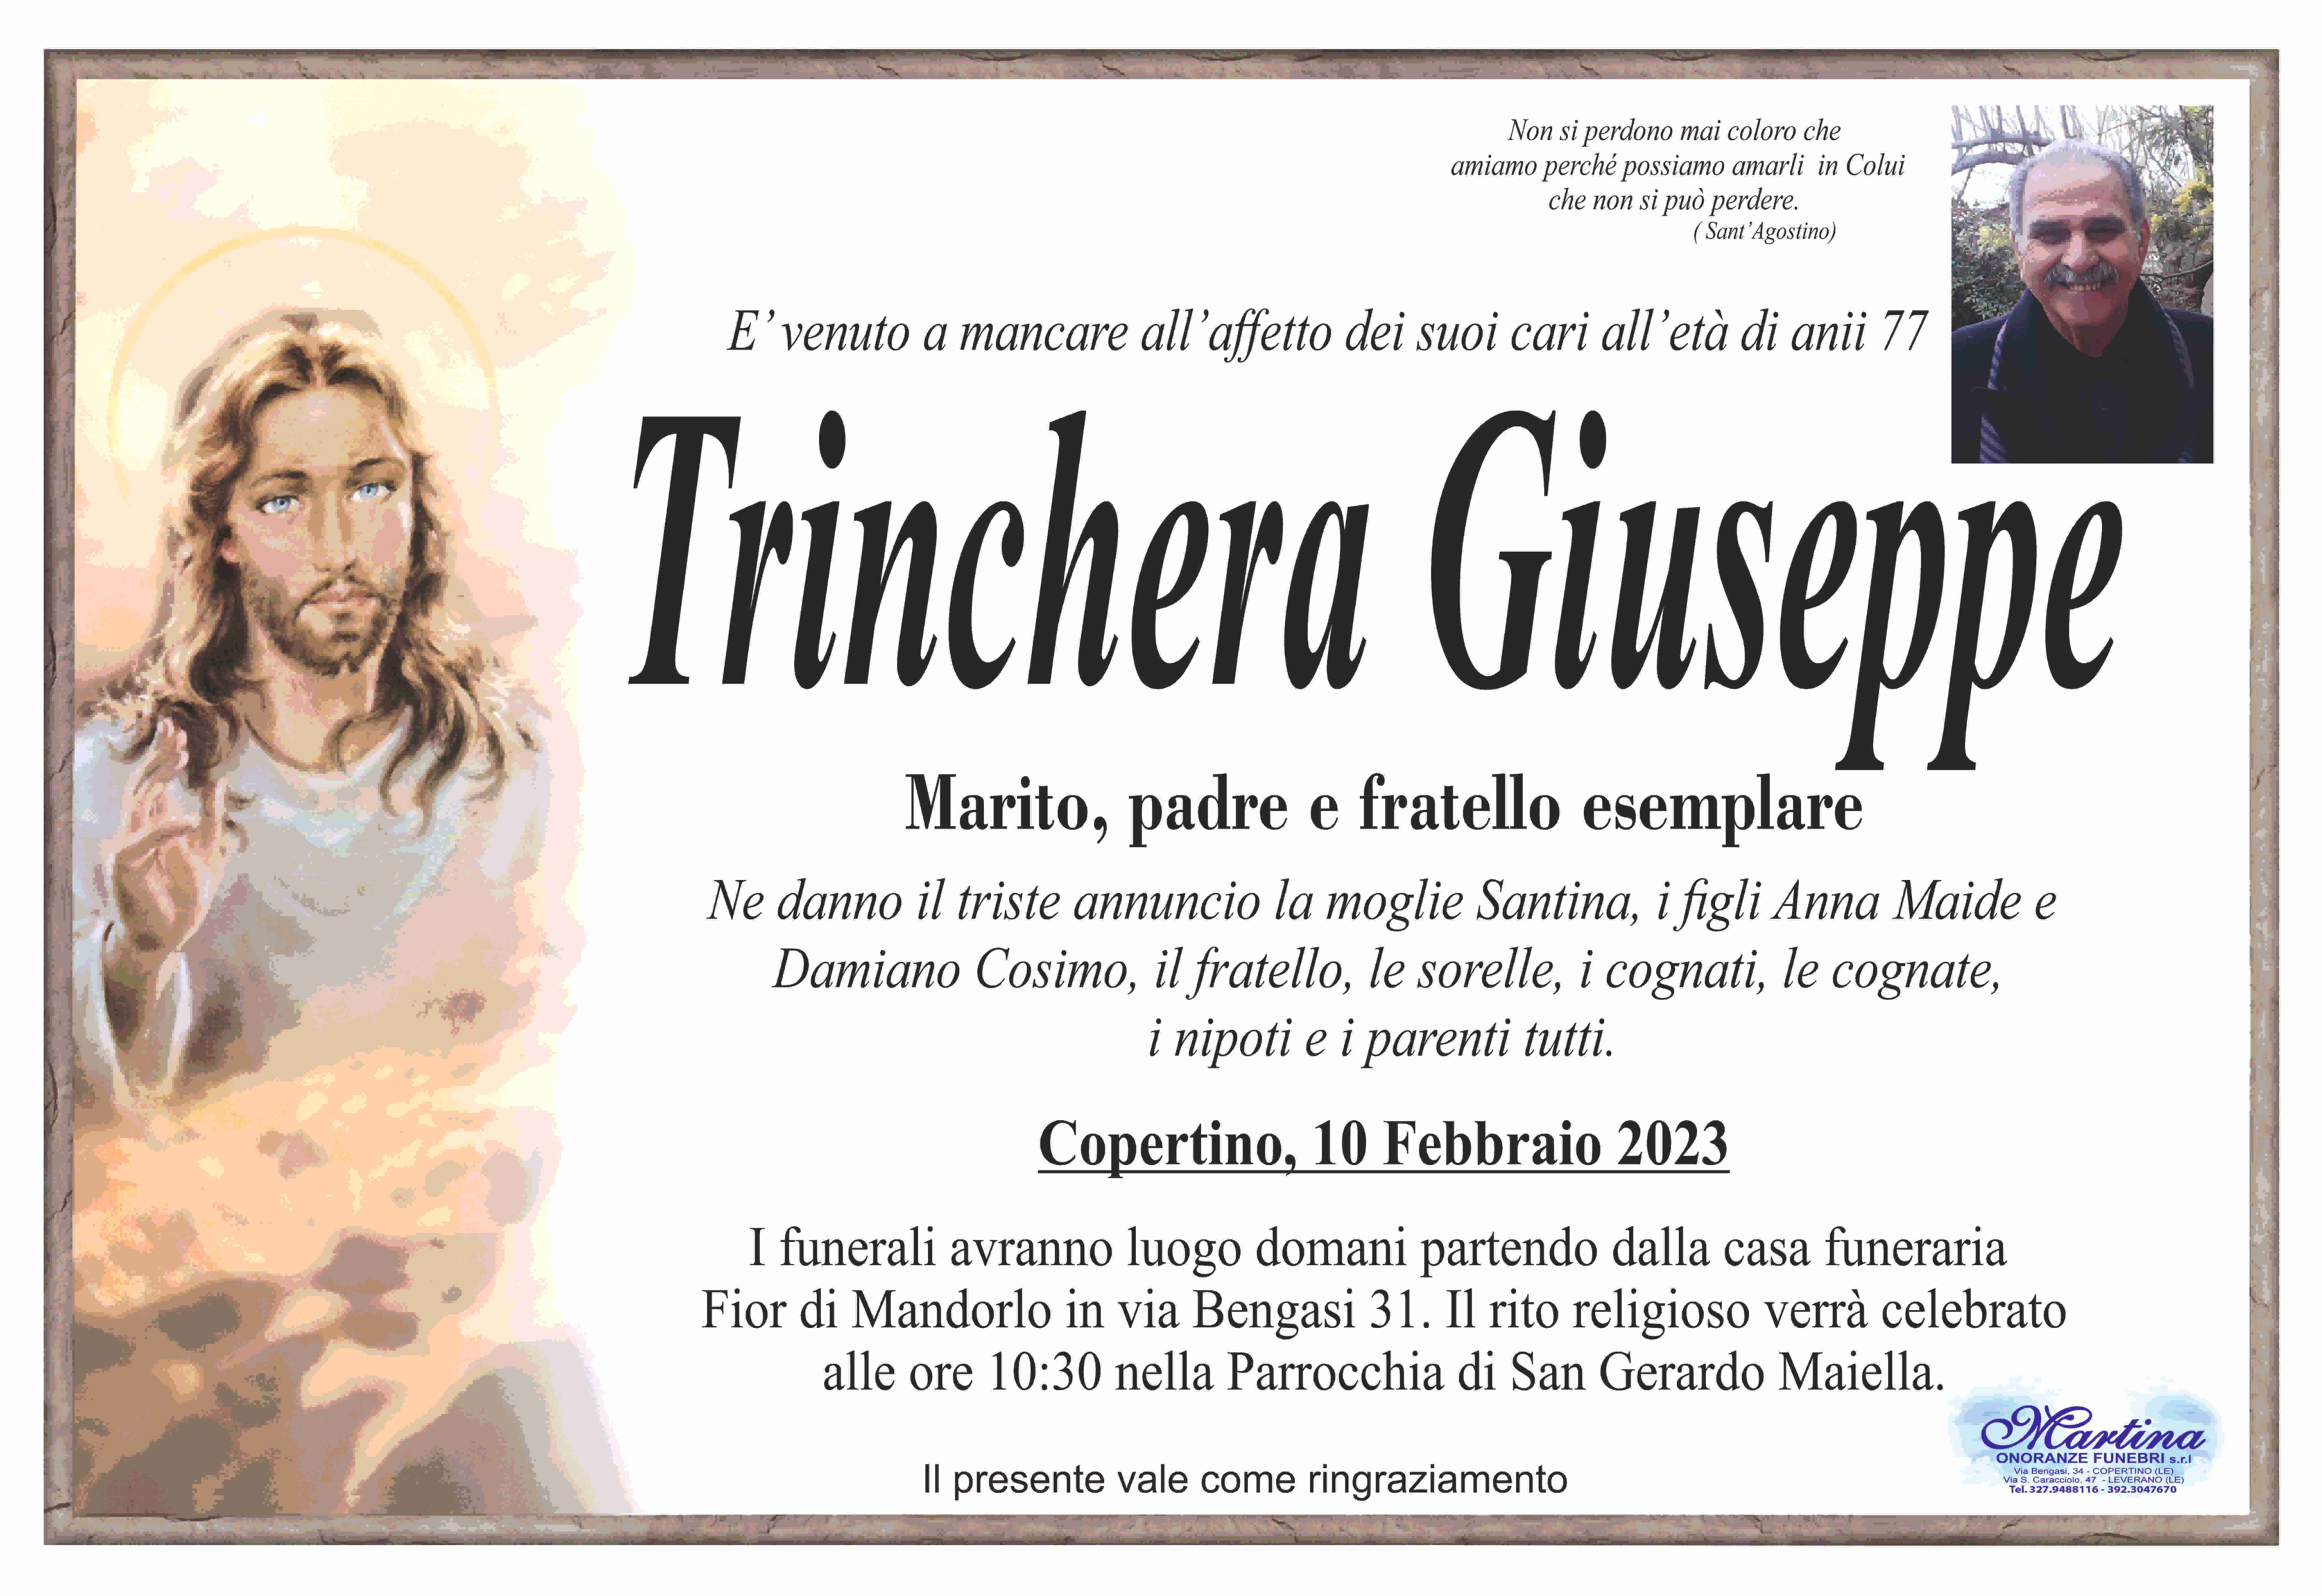 Giuseppe Trinchera